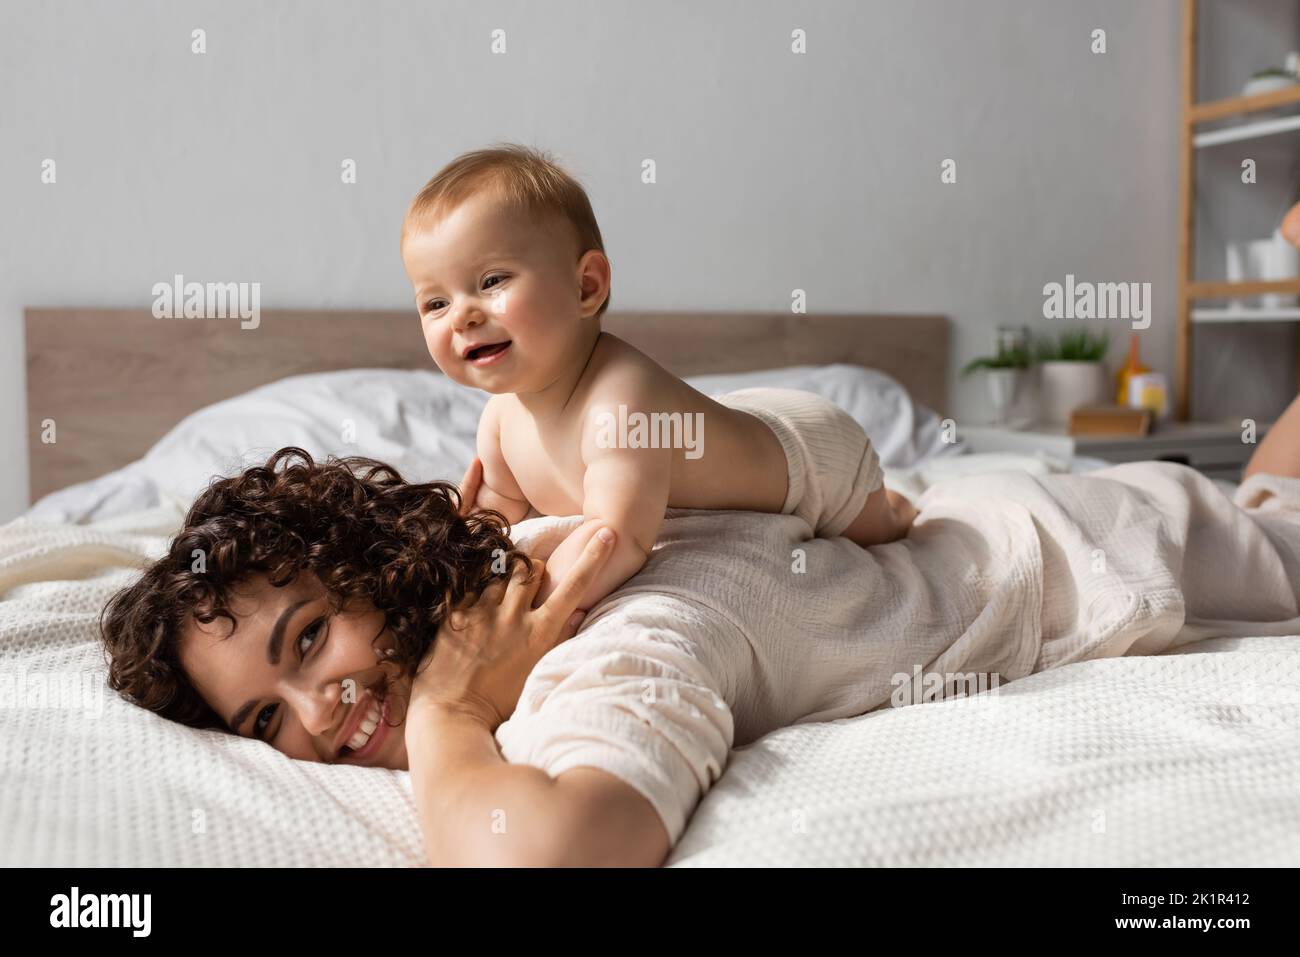 allegro bambino sdraiato sul retro di riccio e felice madre in camera da letto, immagine stock Foto Stock